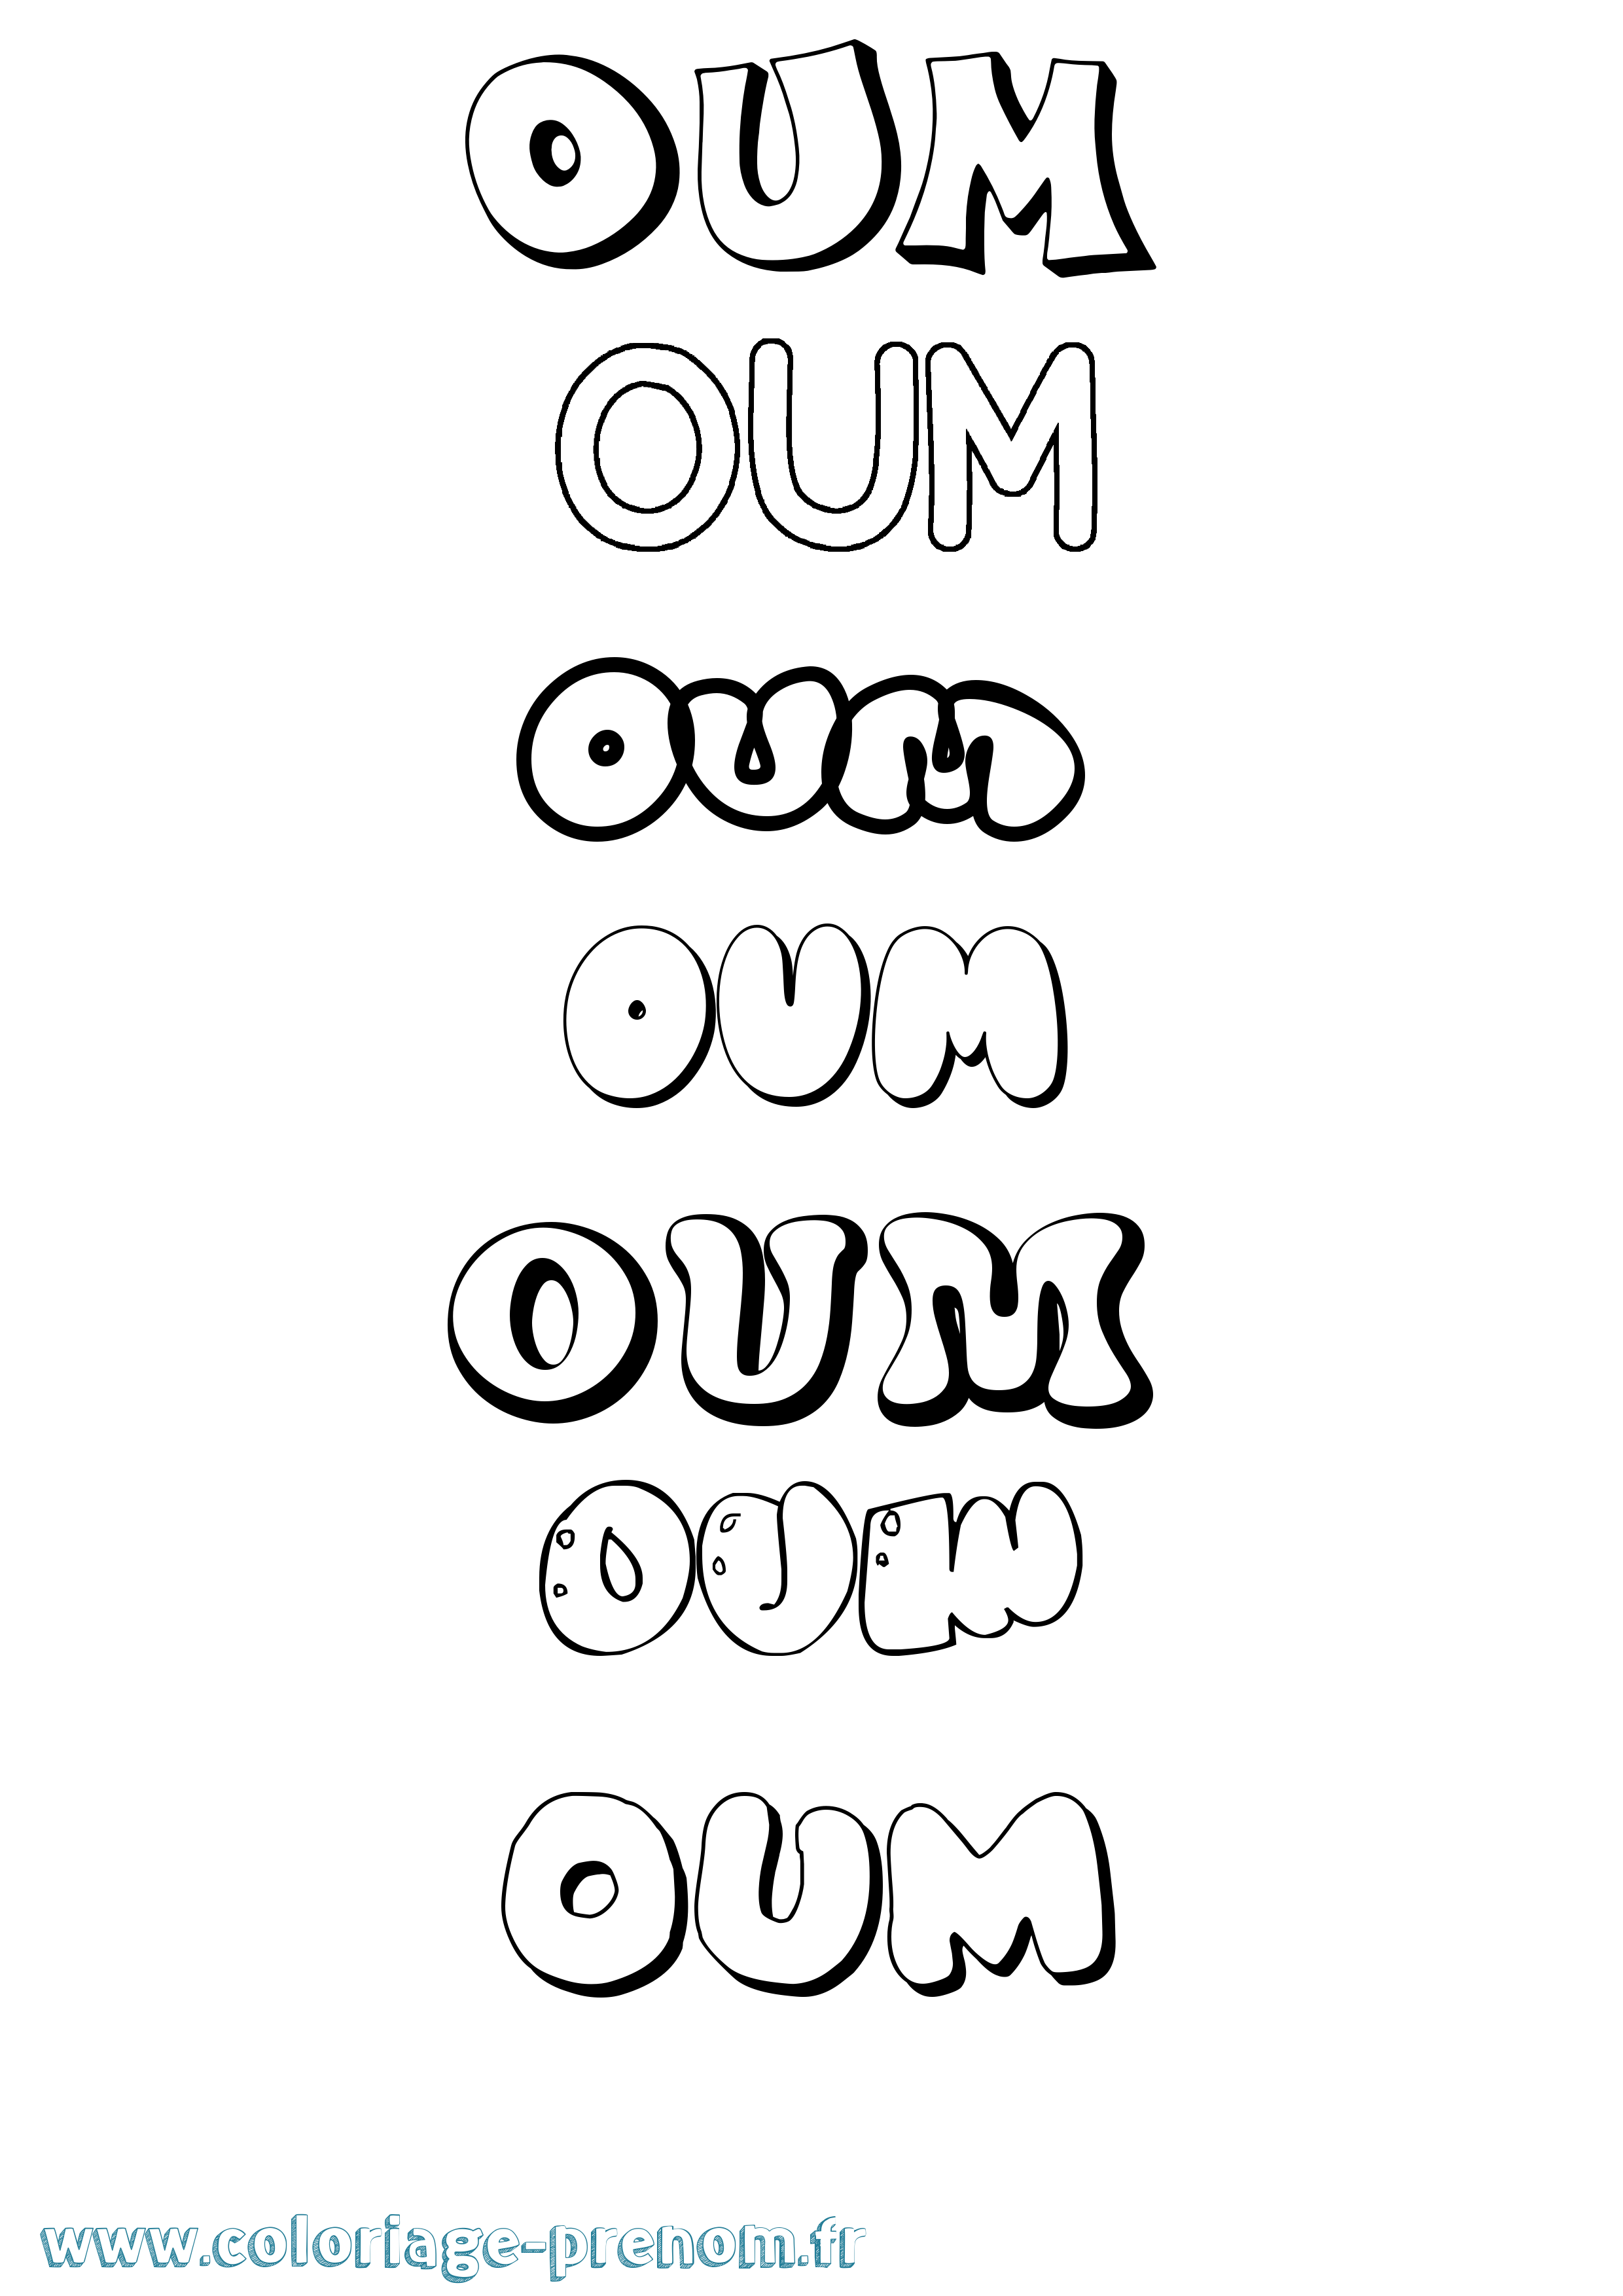 Coloriage prénom Oum Bubble